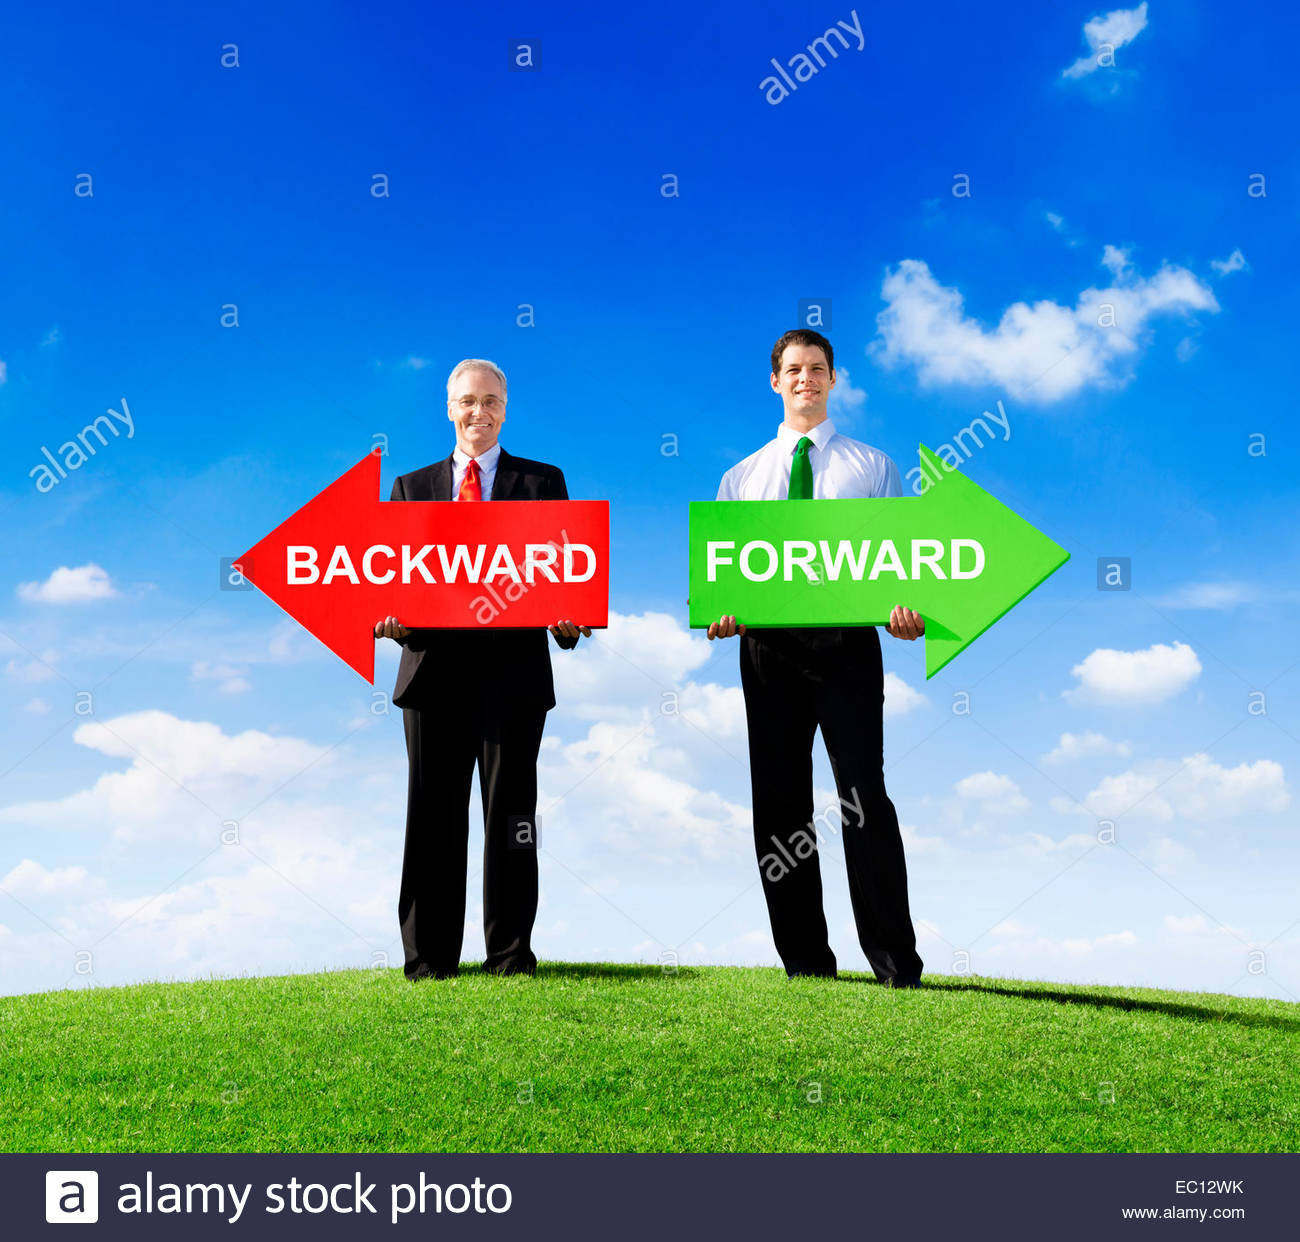 backward and forward - Liberal Dictionary